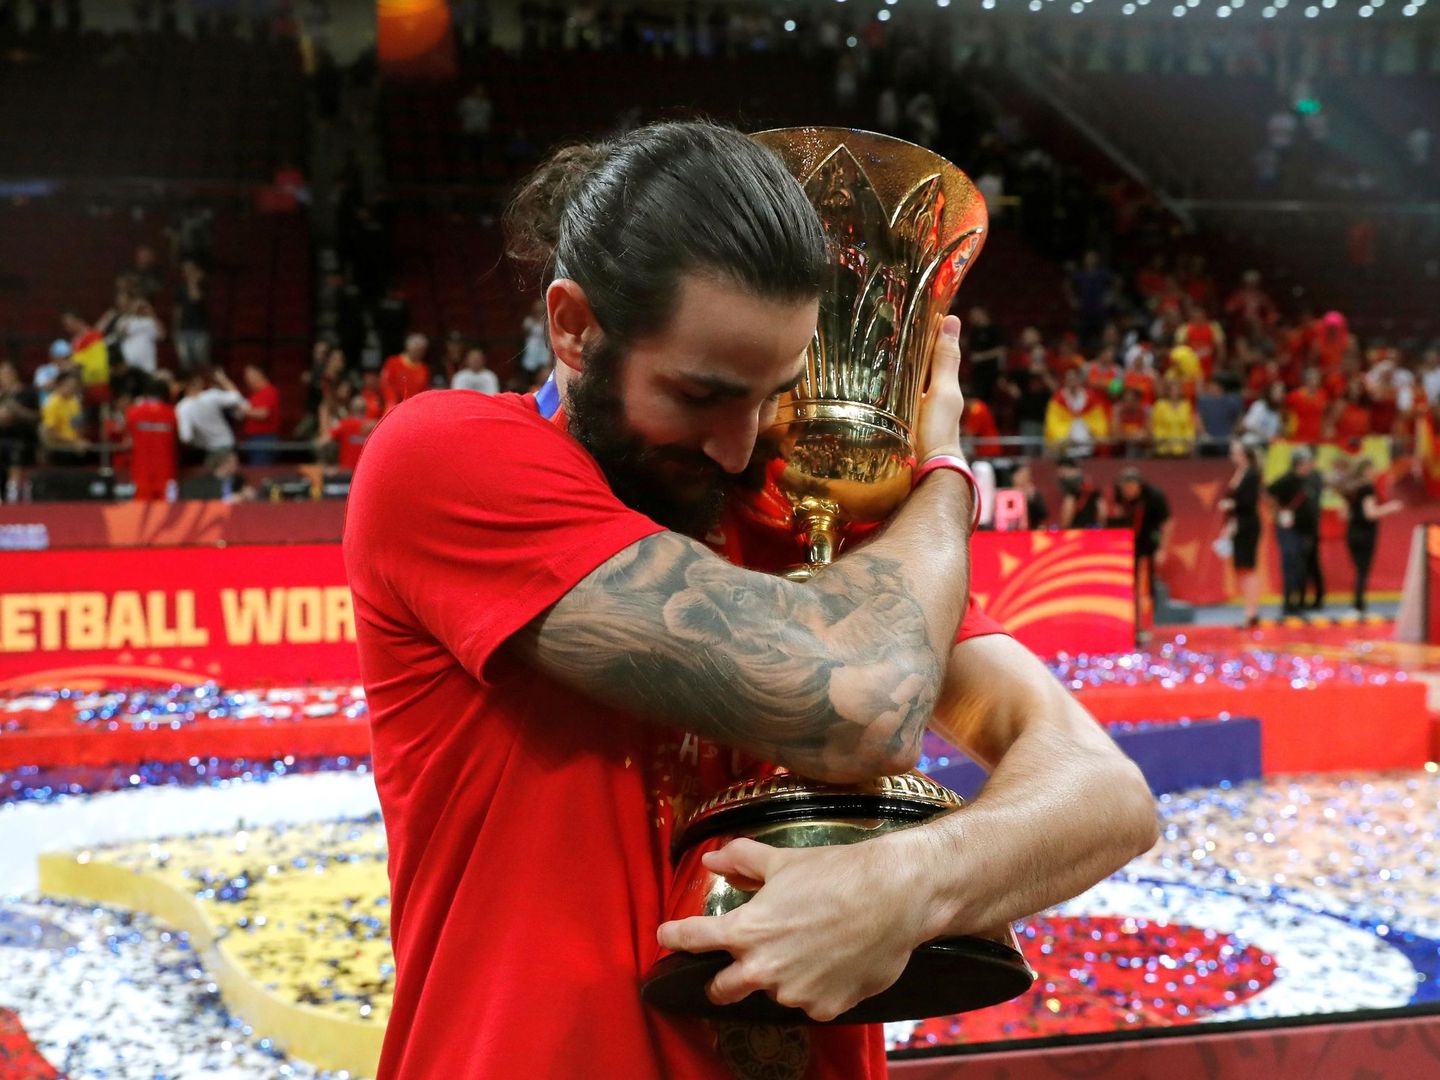 Ricky Rubio abraza la copa del mundo de baloncesto en Pekín. (EFE)